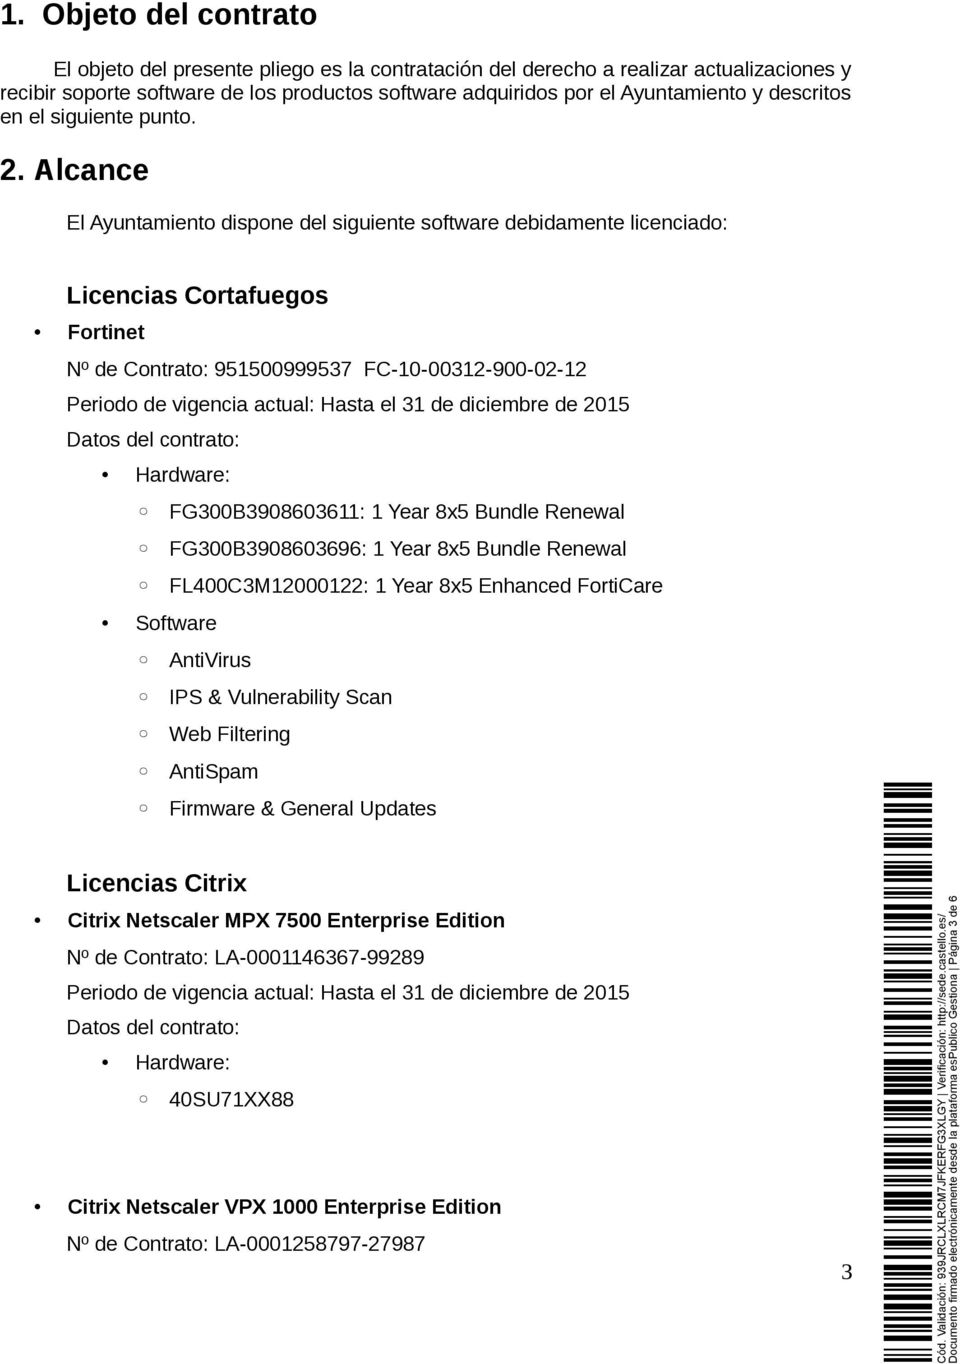 Alcance El Ayuntamiento dispone del siguiente software debidamente licenciado: Licencias Cortafuegos Fortinet Nº de Contrato: 951500999537 FC-10-00312-900-02-12 Datos del contrato: Hardware: